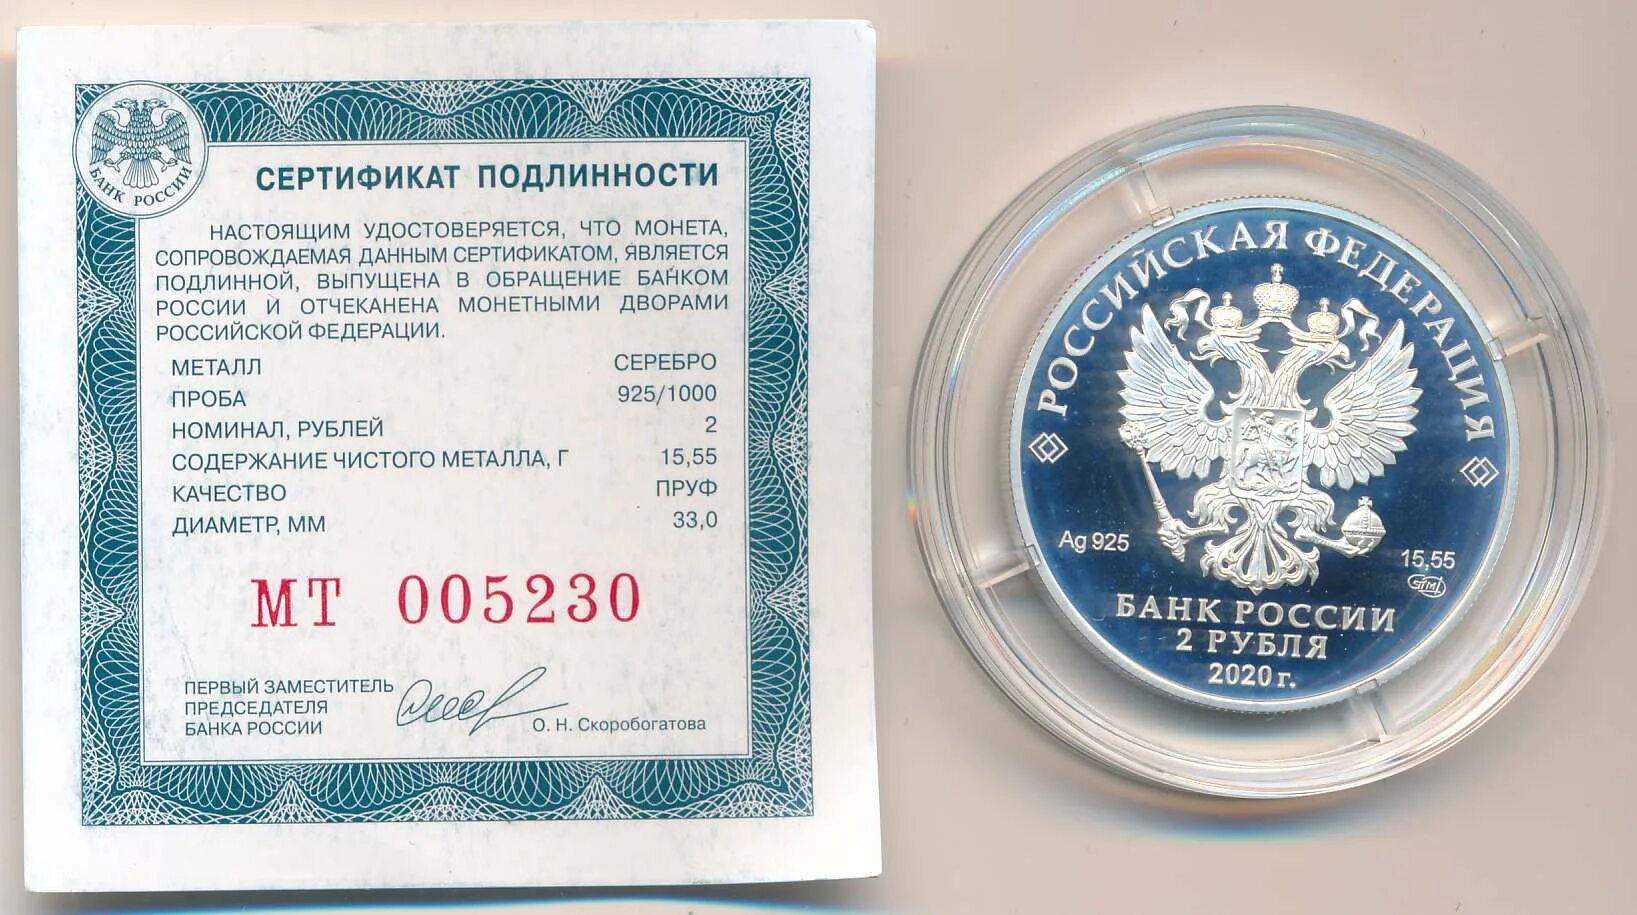 Сертификат подлинности монеты. Сертификат подлинности монеты ЦБ. Сертификаты ЕС на монеты 3 рубля. Сертификат подлинности Императорский монетный двор.